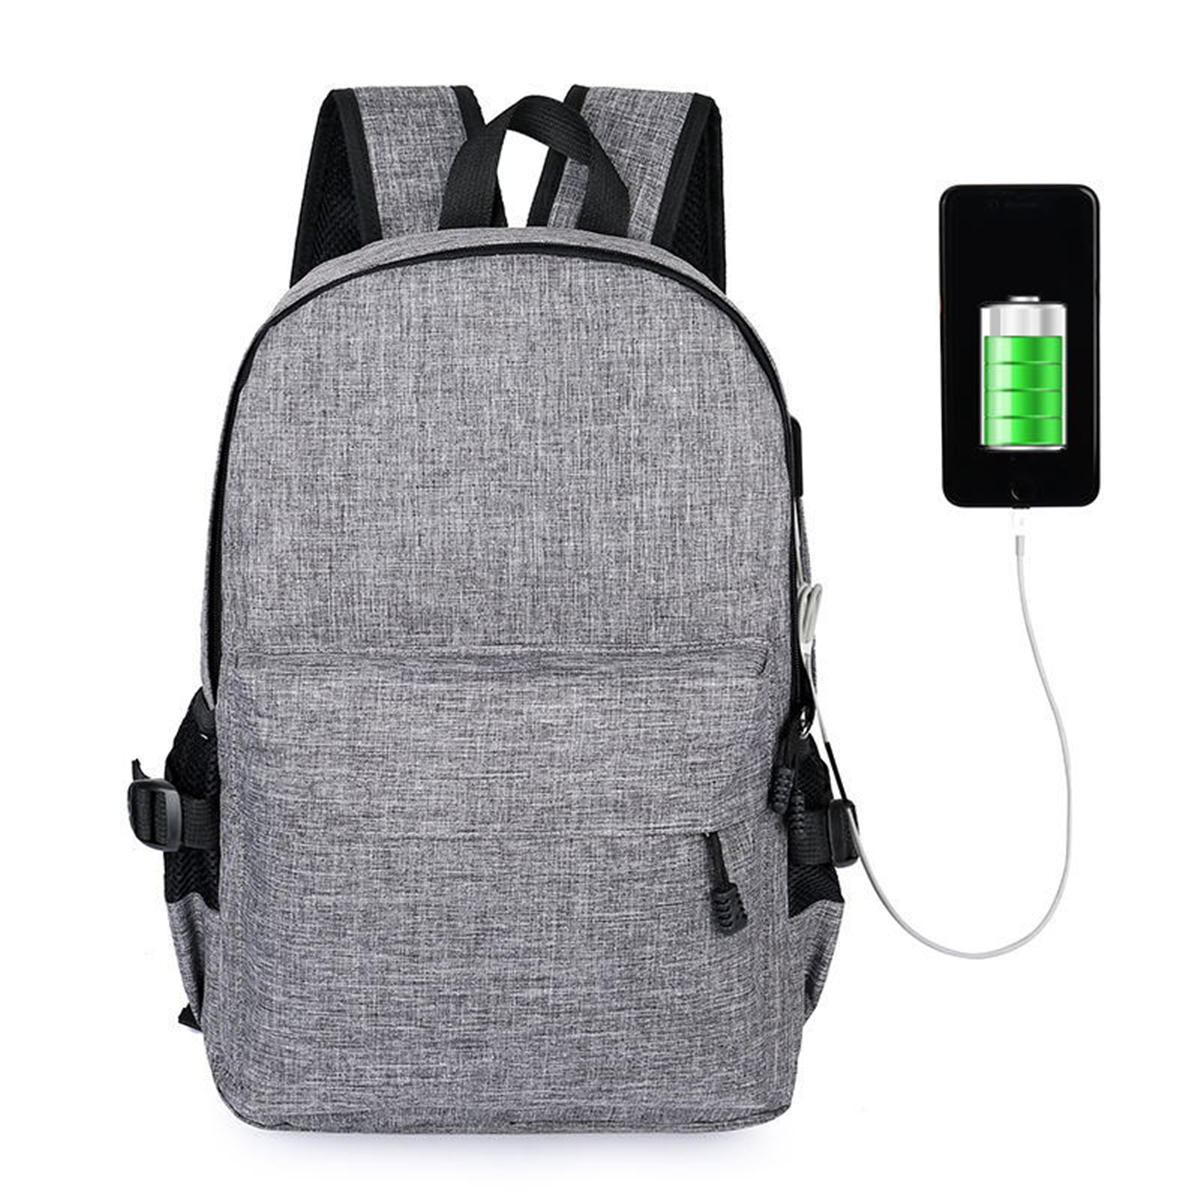 15L Outdoor USB Anti-theft Backpack Rucksack Laptop Bag School Shoulder Bag Camping Travel  